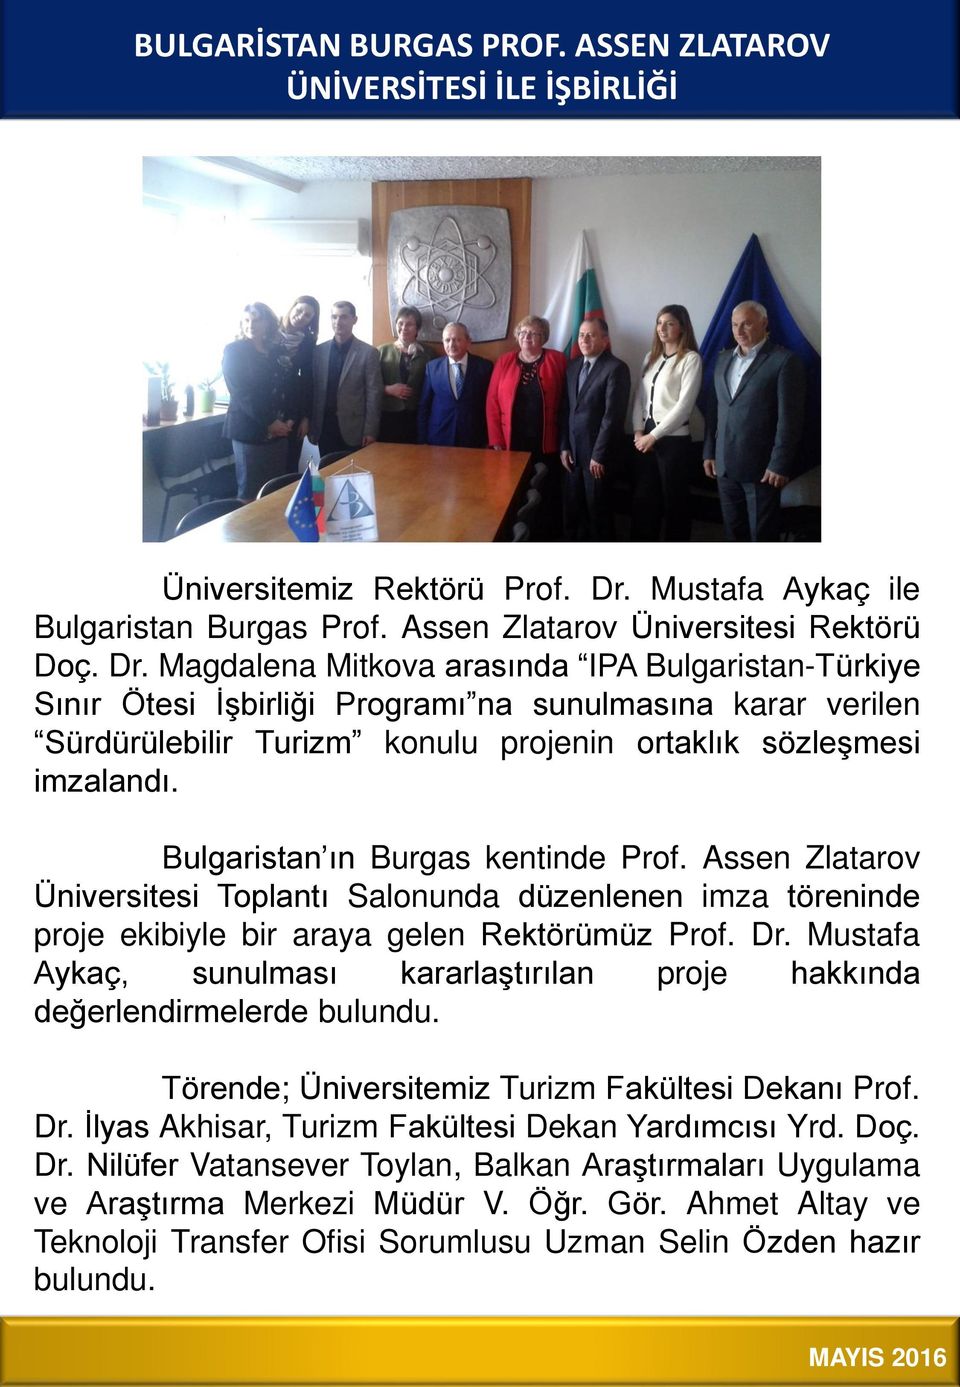 Magdalena Mitkova arasında IPA Bulgaristan-Türkiye Sınır Ötesi İşbirliği Programı na sunulmasına karar verilen Sürdürülebilir Turizm konulu projenin ortaklık sözleşmesi imzalandı.